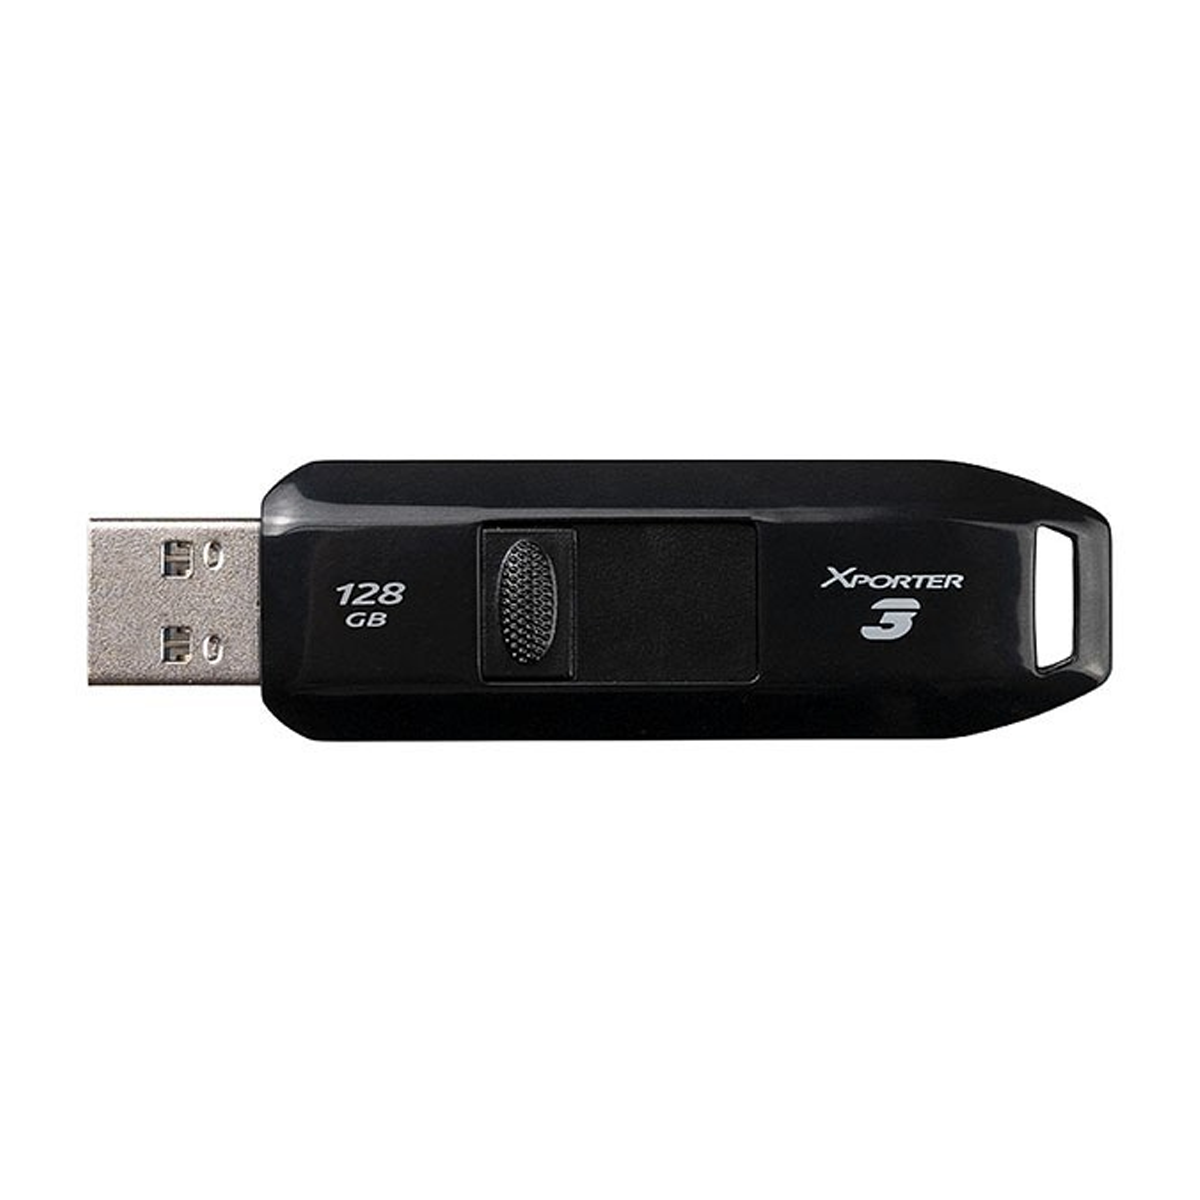 فلش مموری پاتریوت مدل Xporter 3 USB 3.2 ظرفیت 128 گیگابایت-small-image